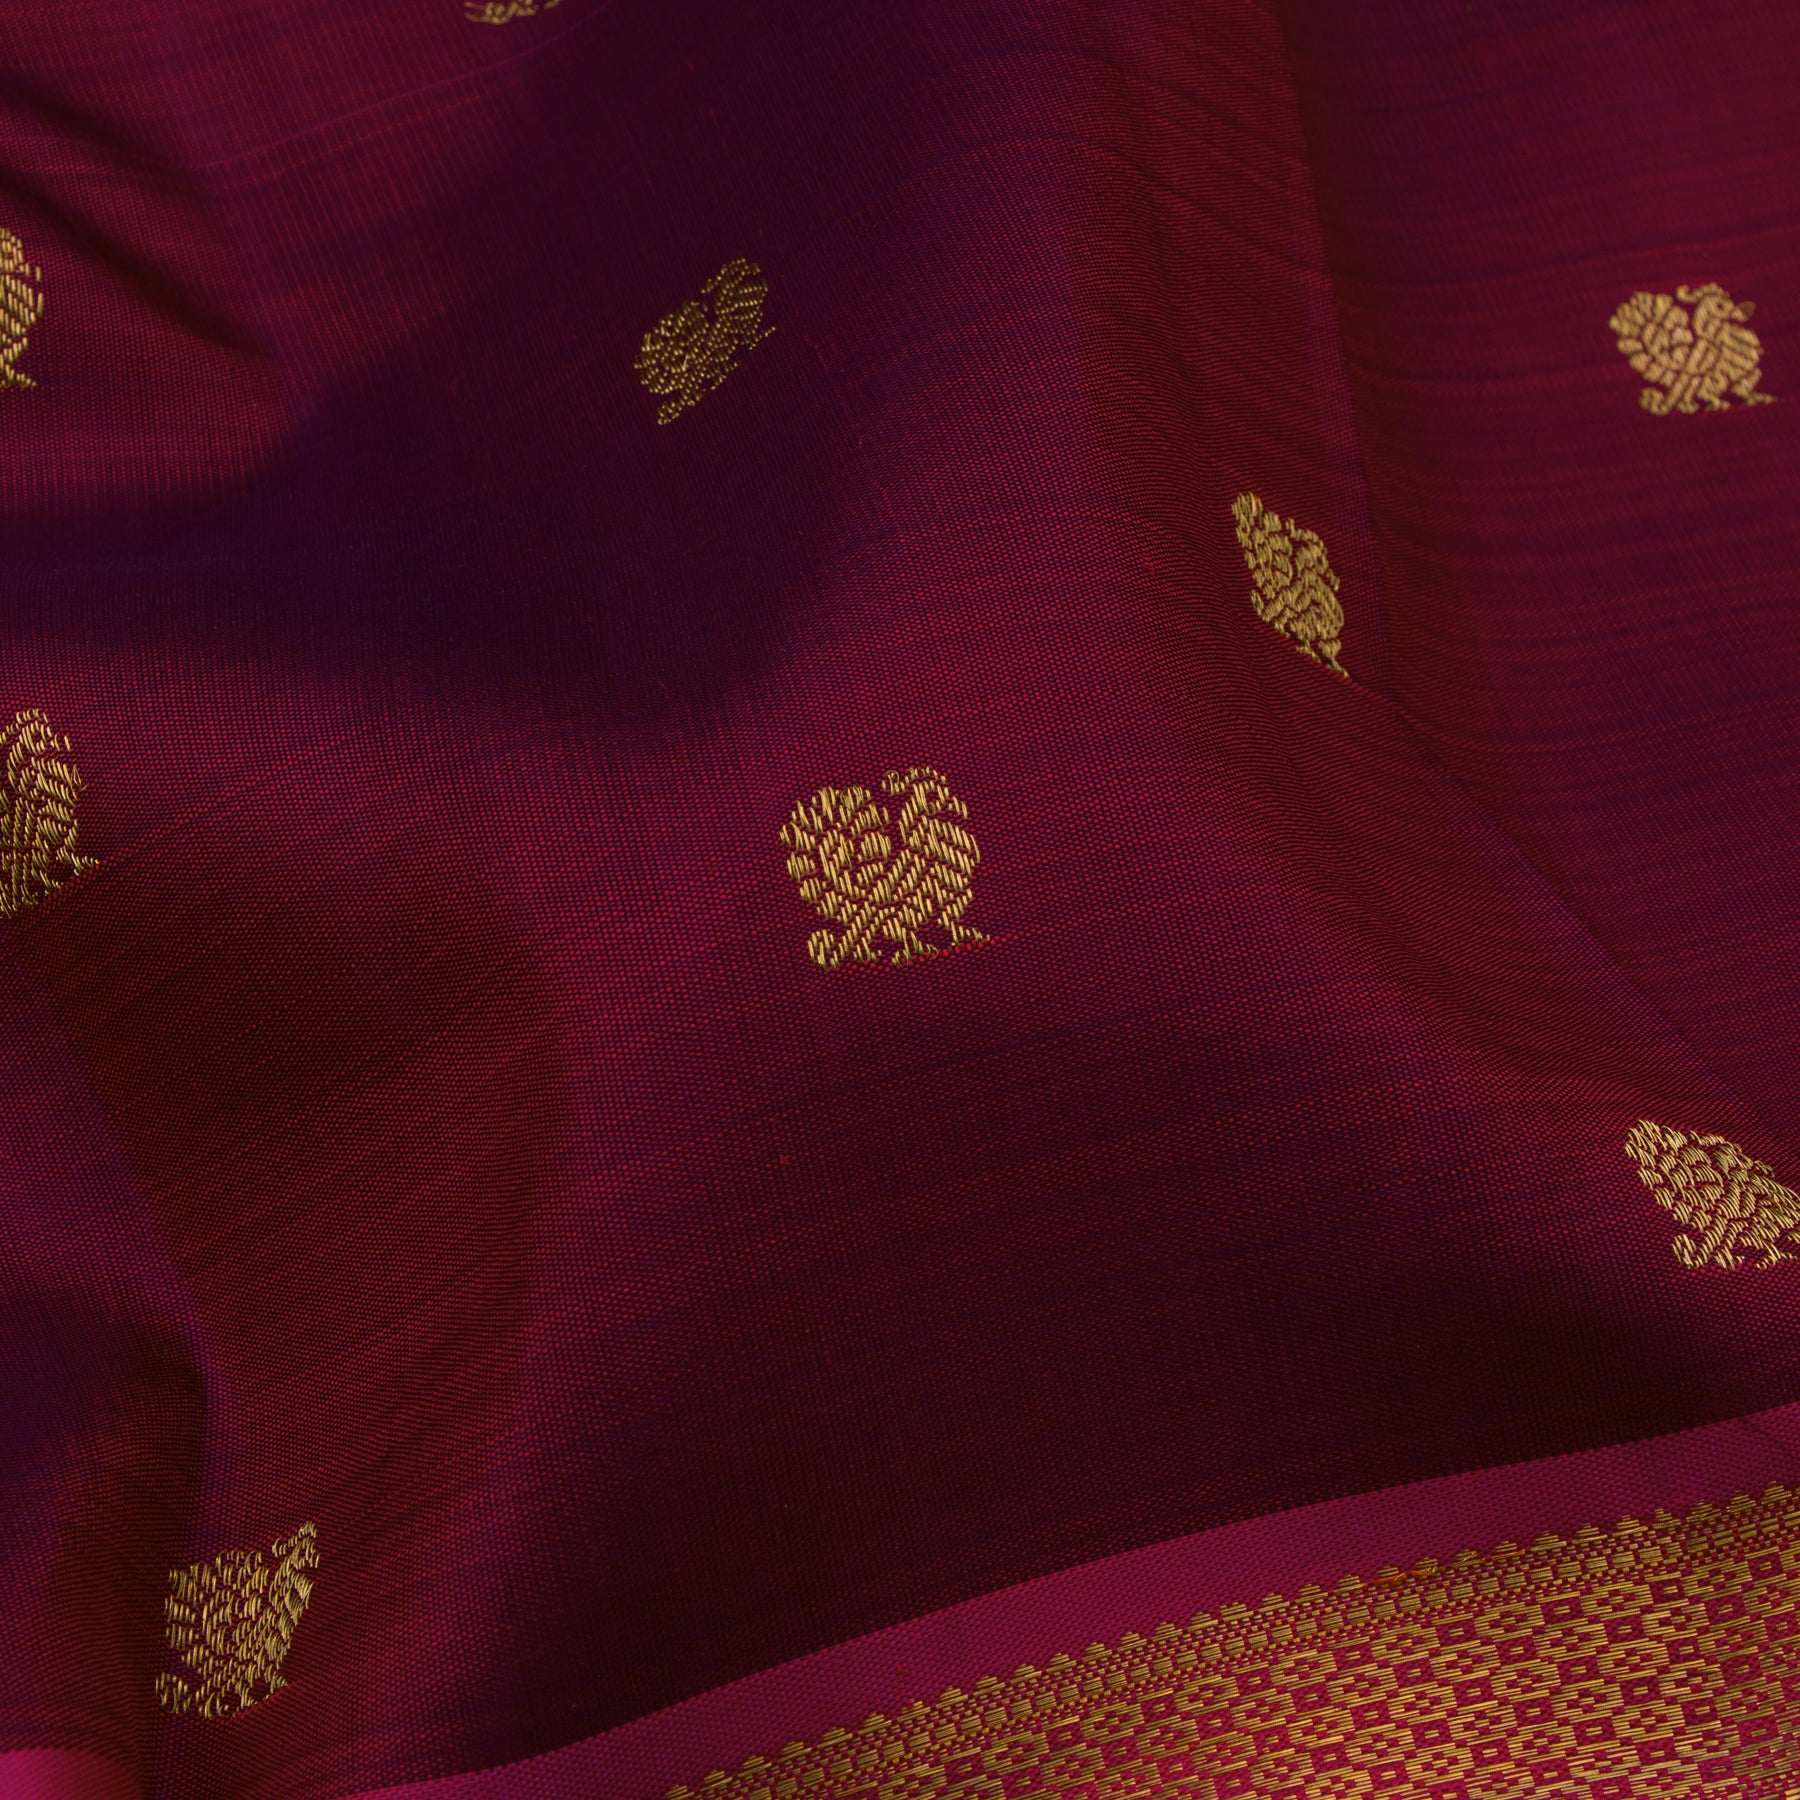 Kanakavalli Kanjivaram Silk Sari 23-595-HS001-02850 - Fabric View